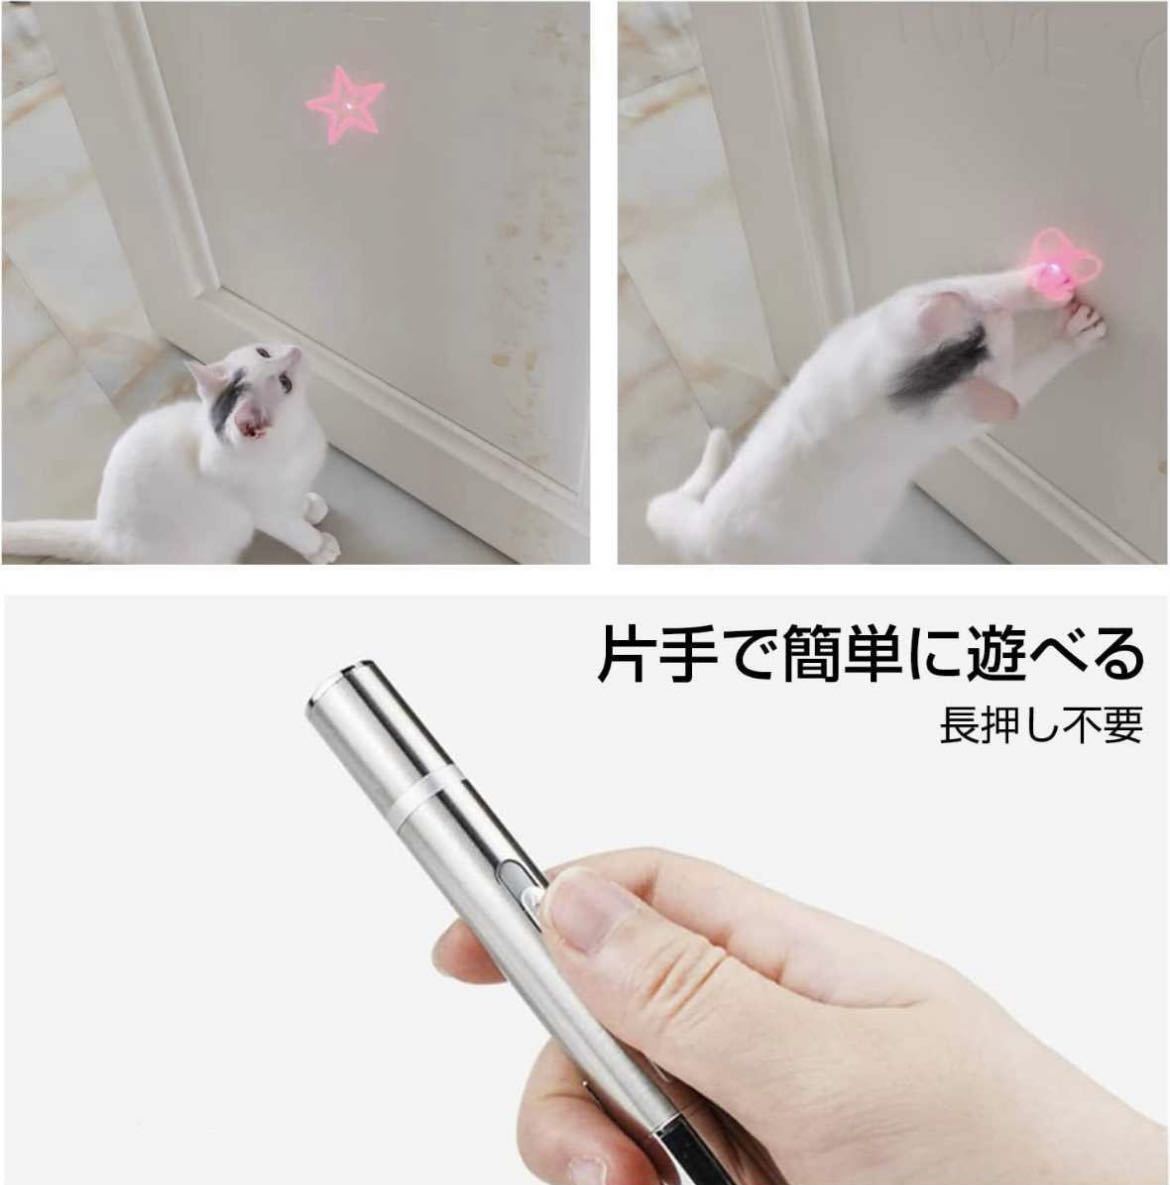 猫おもちゃ 充電式 USB 運動不足解消 おもちゃ レーザーポインター LED ライト 猫じゃらし ネコ 玩具 ストレス解消の画像2